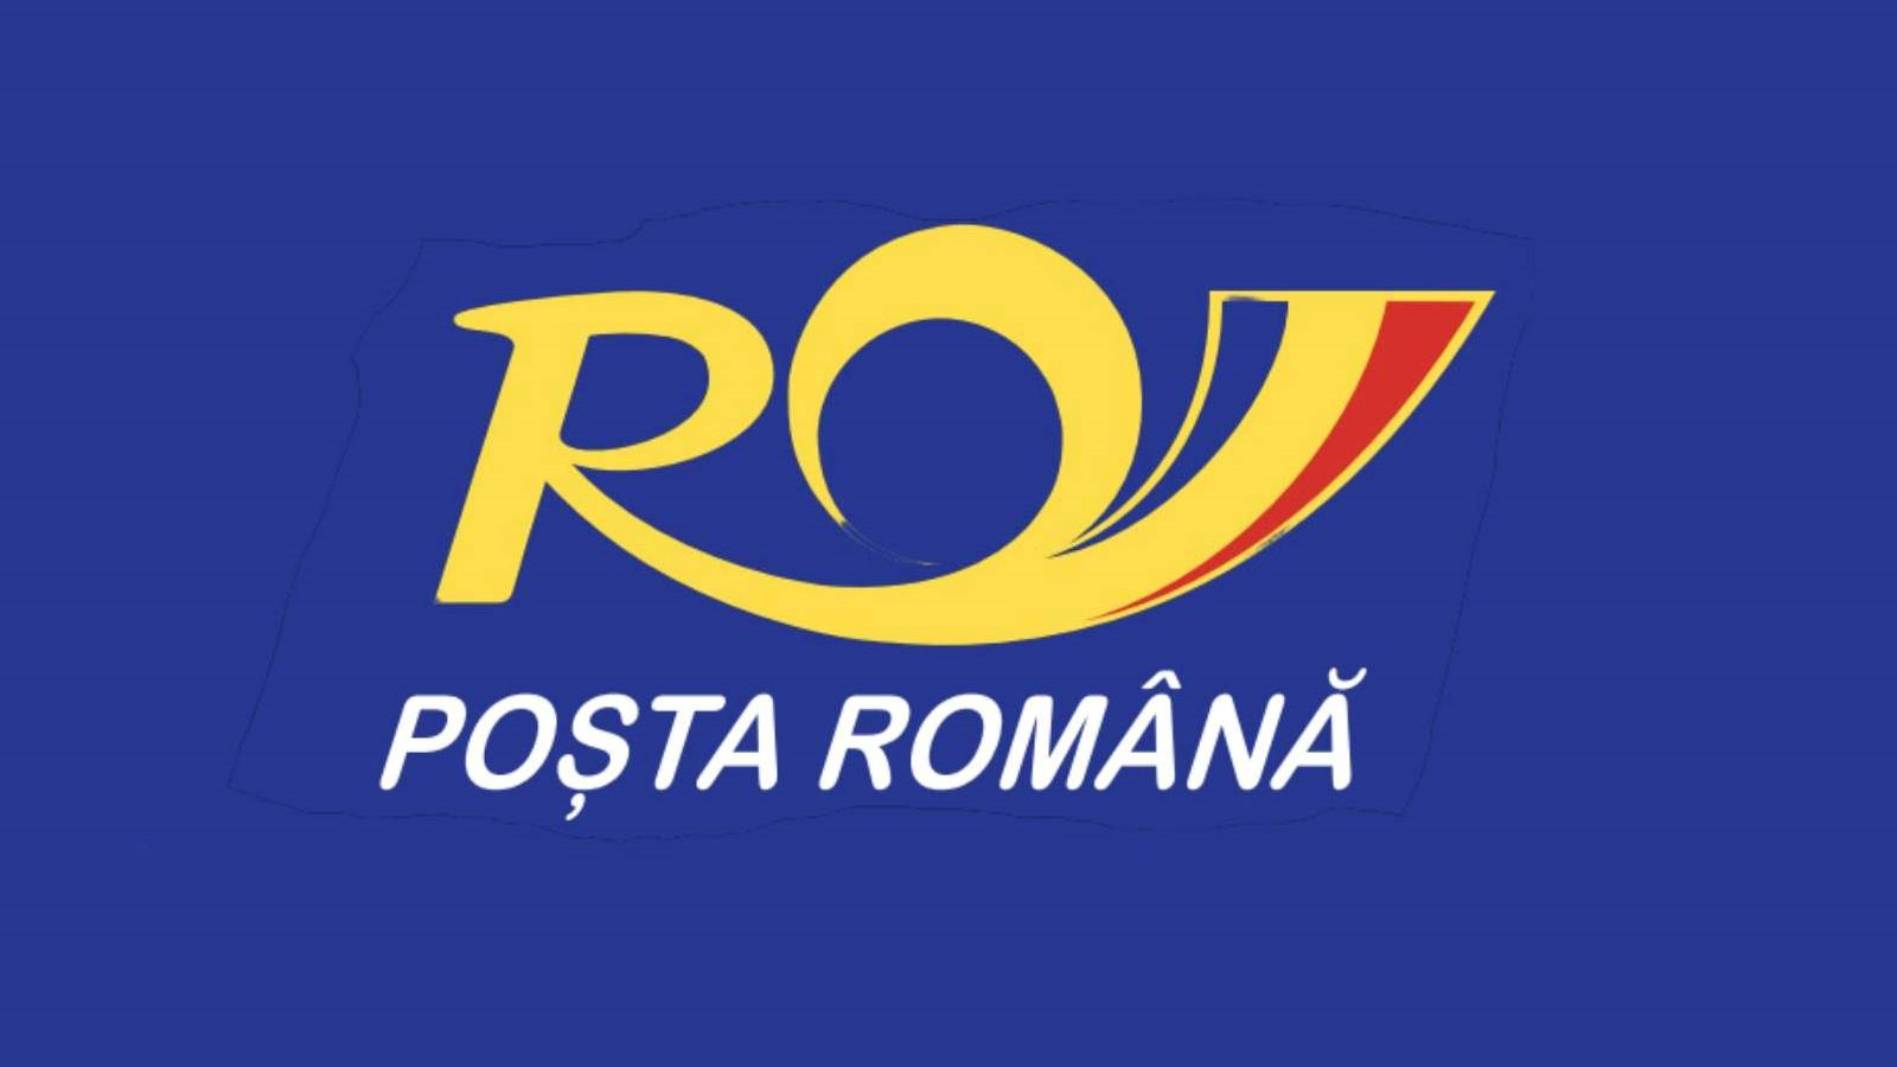 Roemeense postoplossing officieel aangekondigd aan MILJOENEN Roemenen